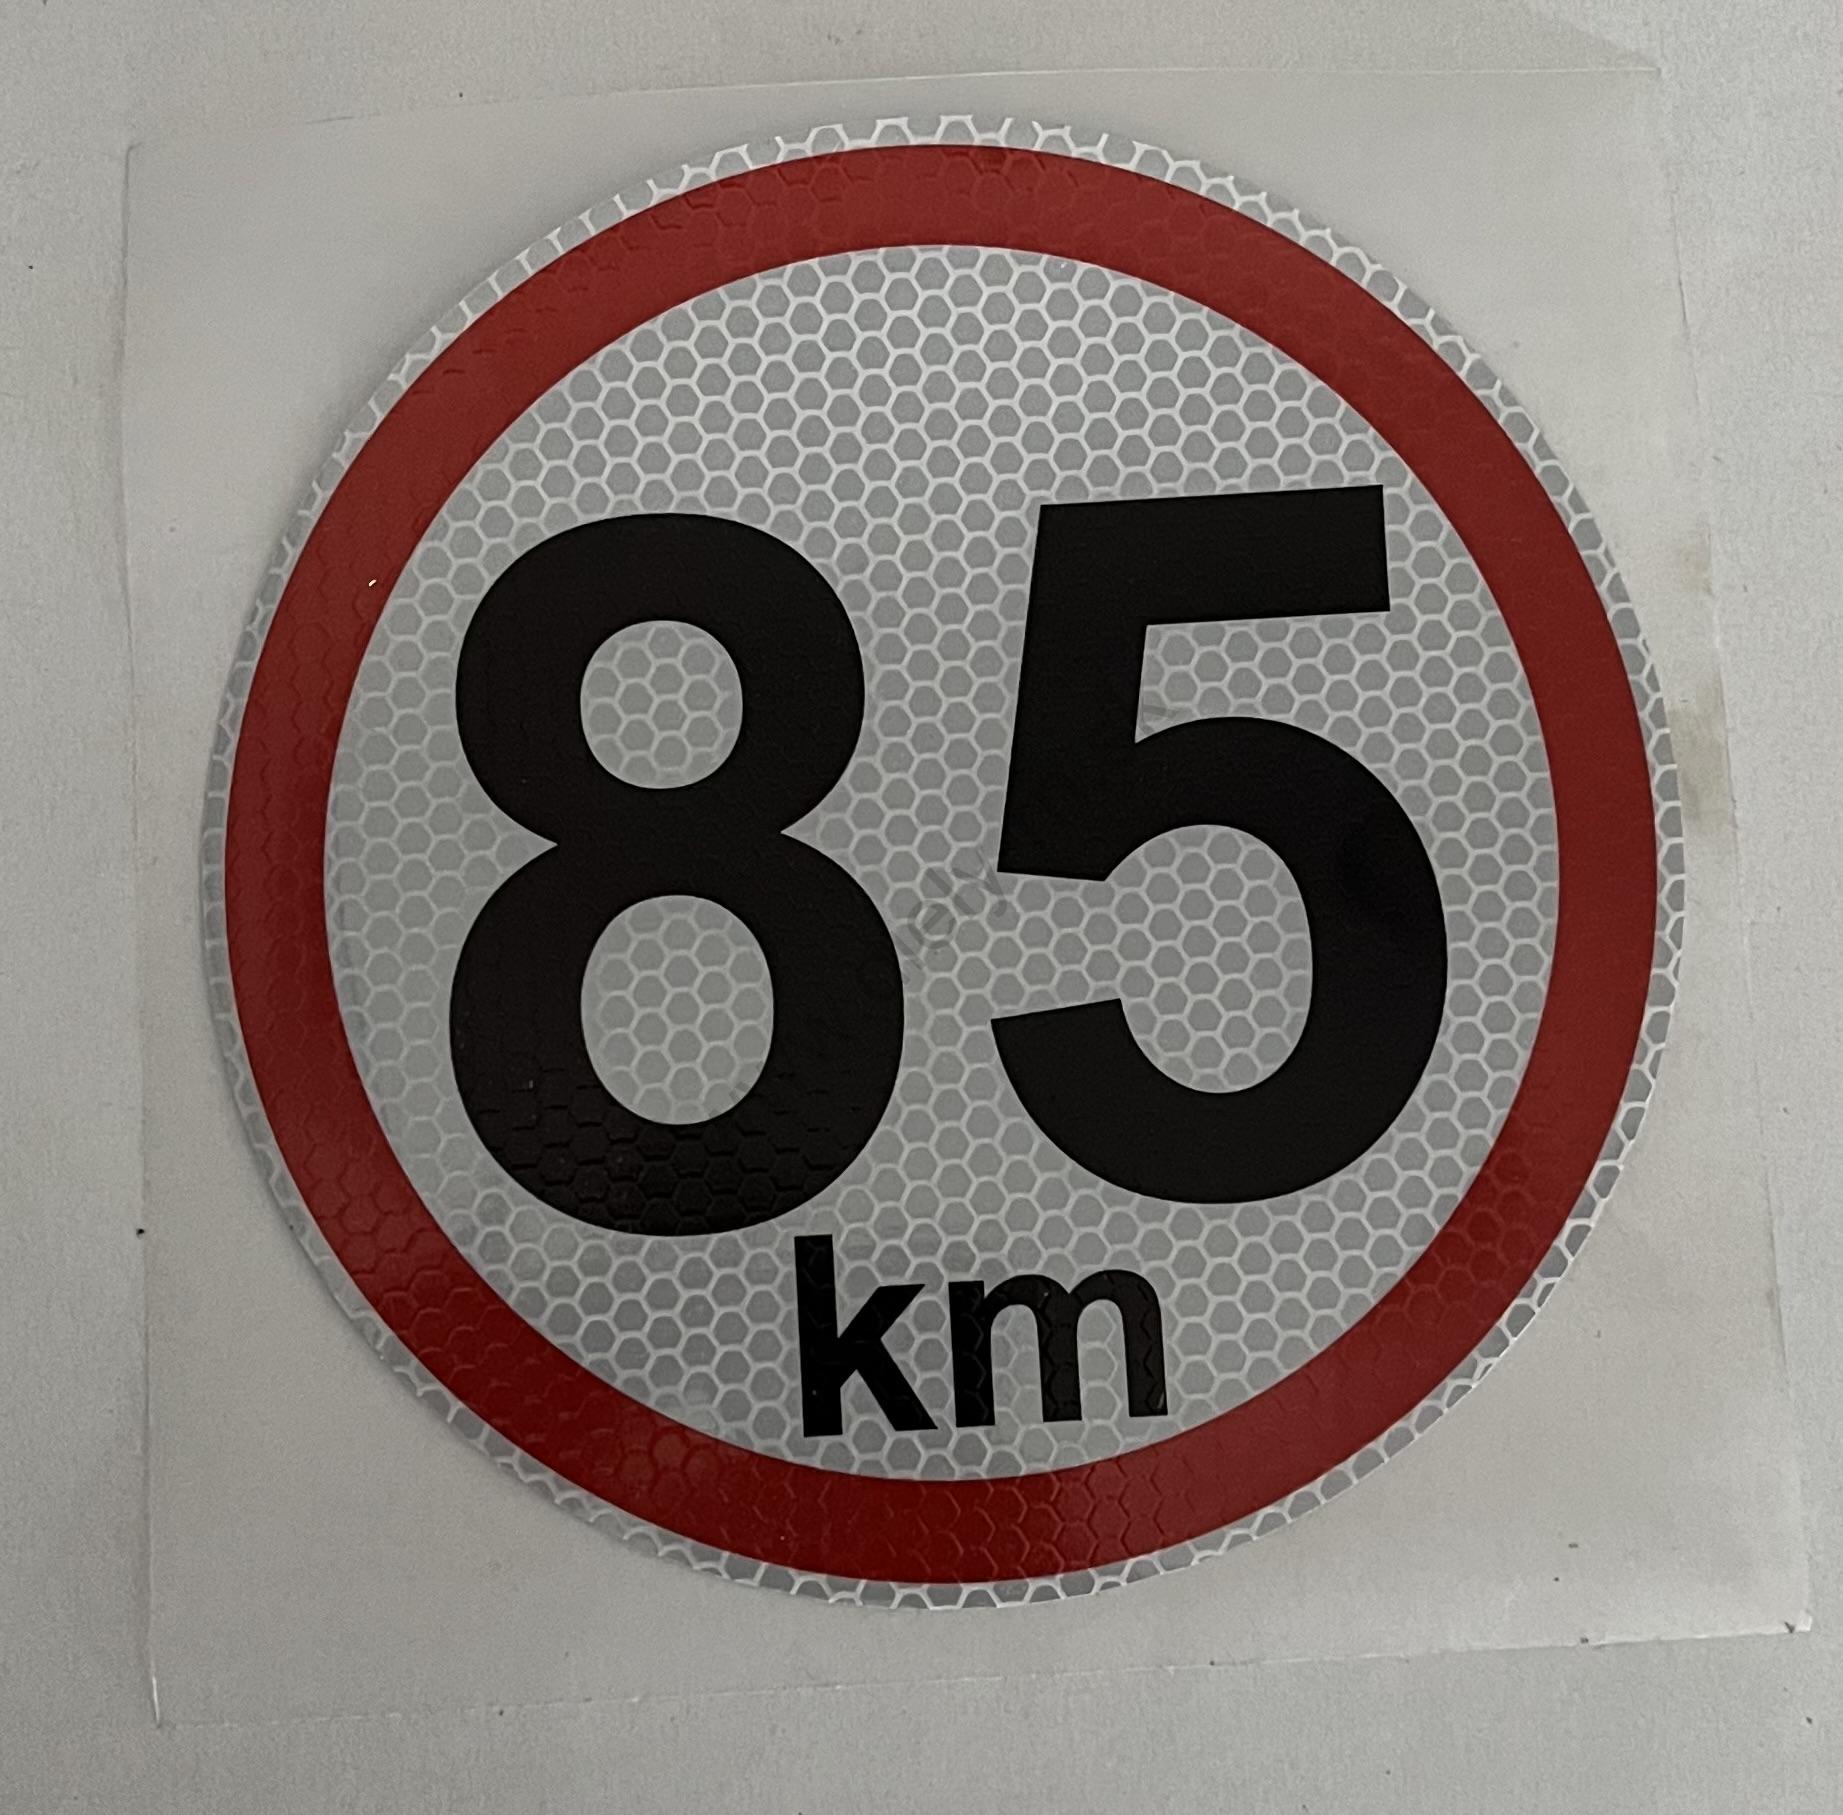 Označenie rýchlosti 85km/h